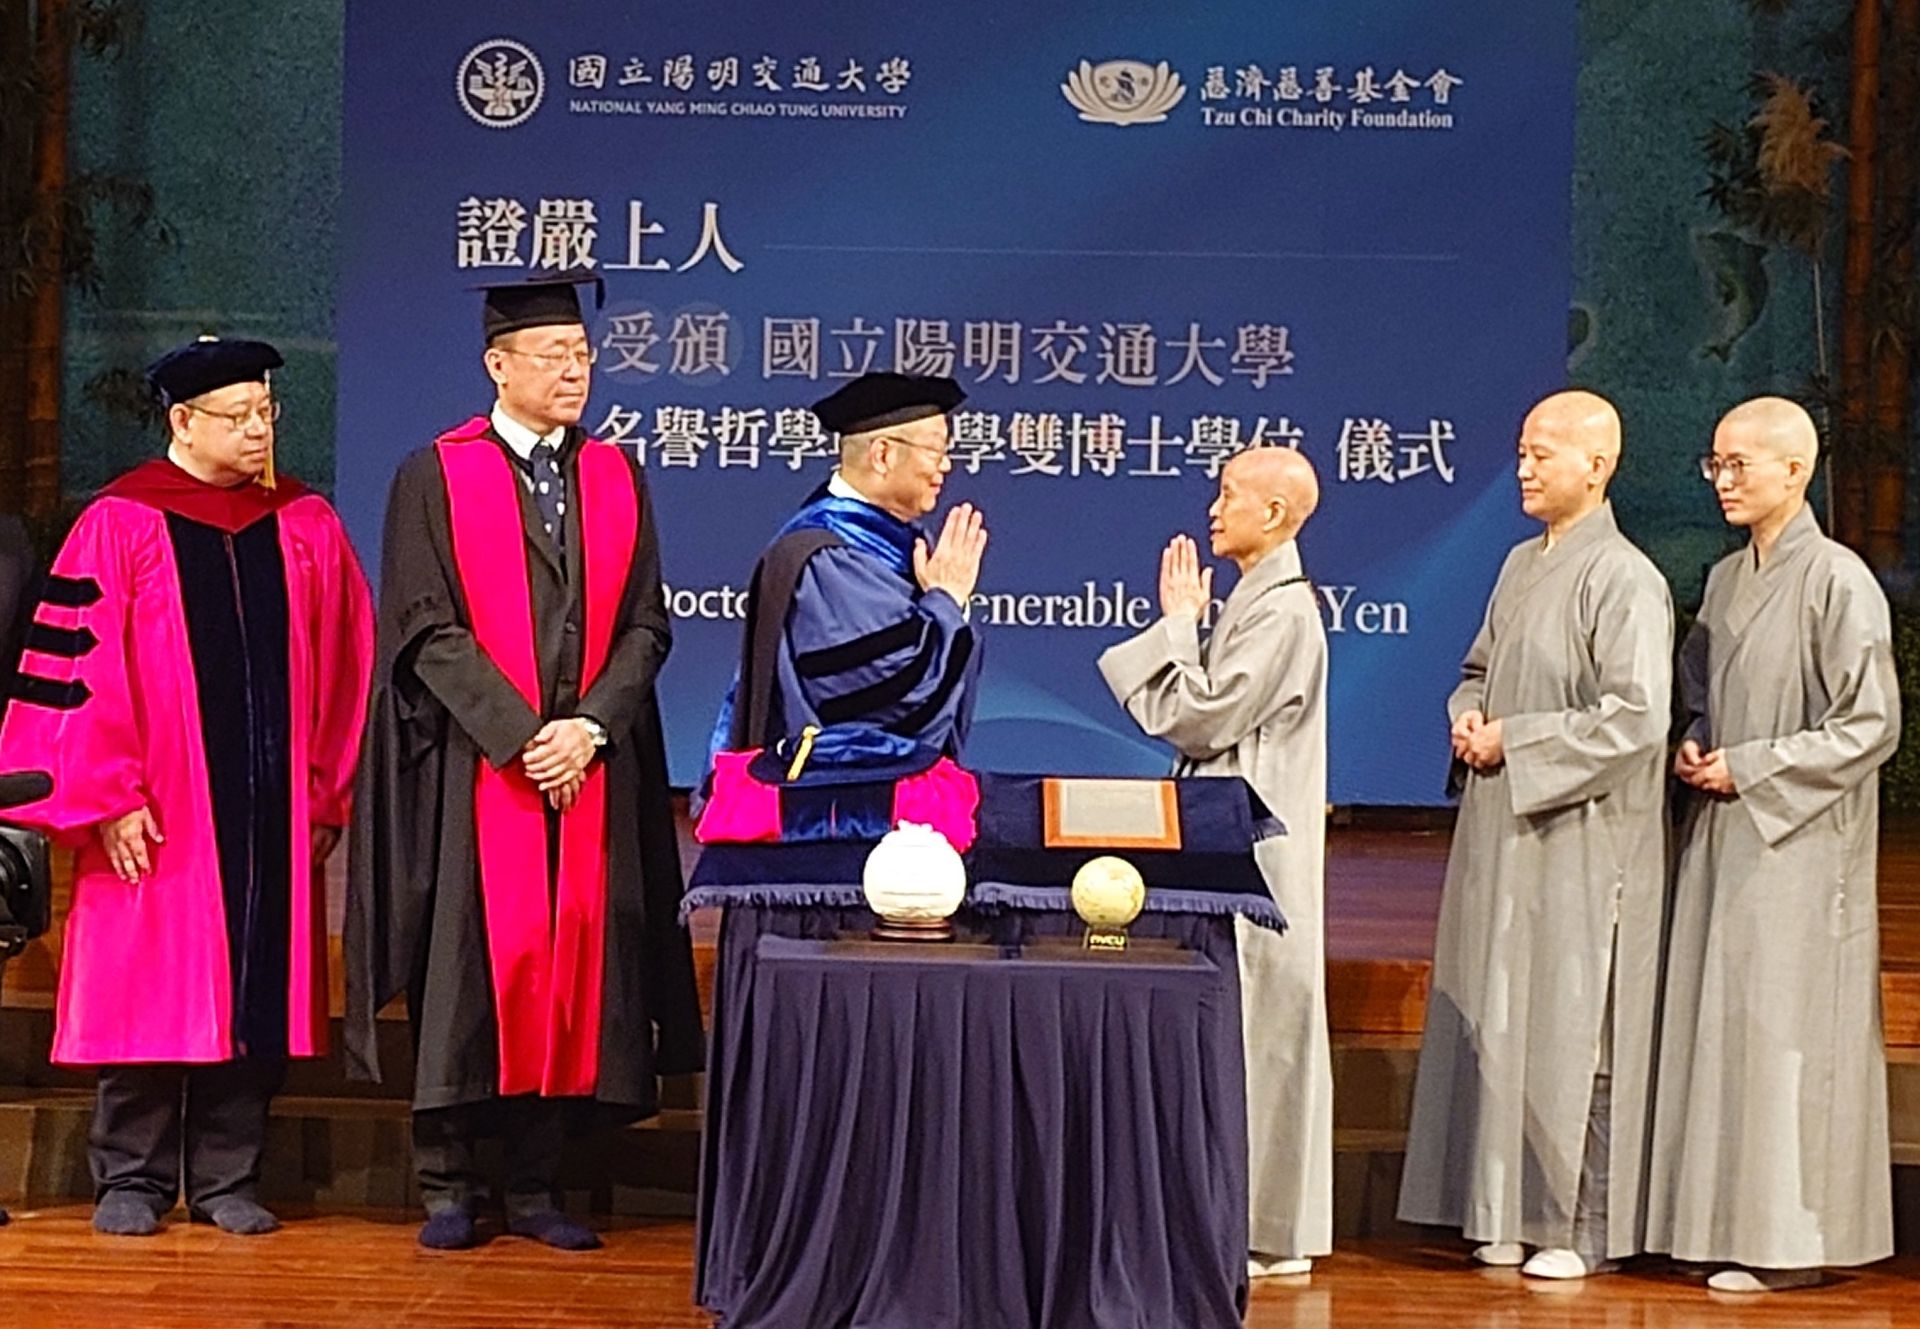 國立陽明交通大學5月12日由林奇宏校長(左)頒贈名譽哲學暨醫學雙博士學位給慈濟證嚴法師(右)。